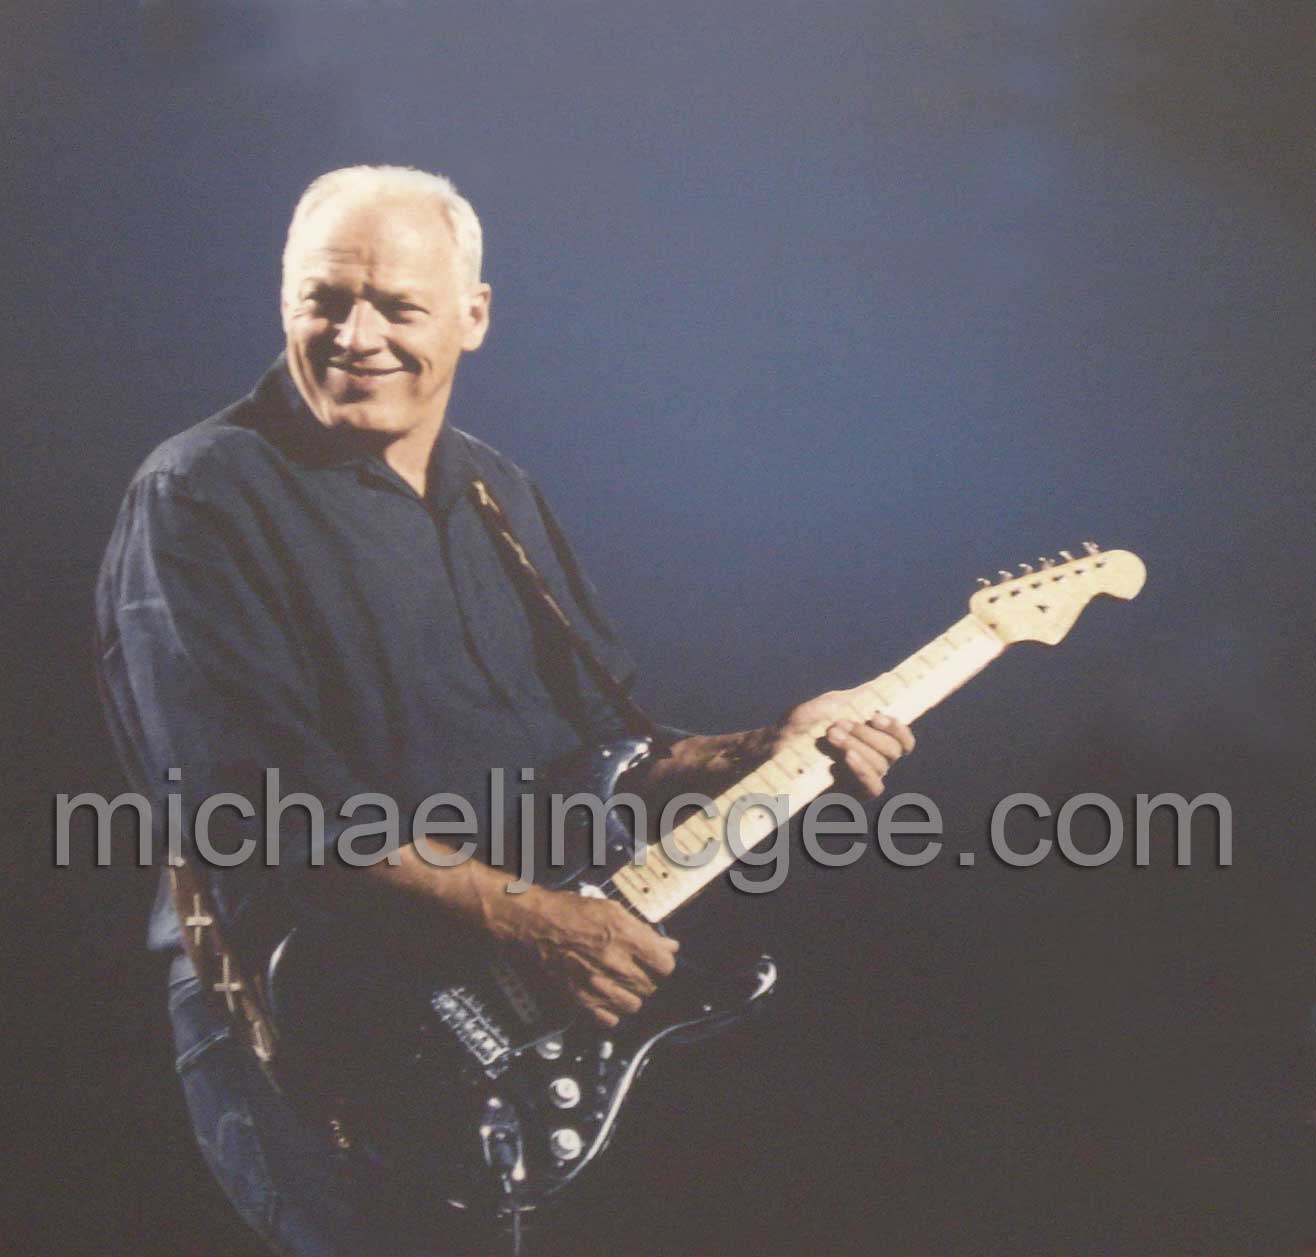 David Gilmour / michaeljmcgee.com